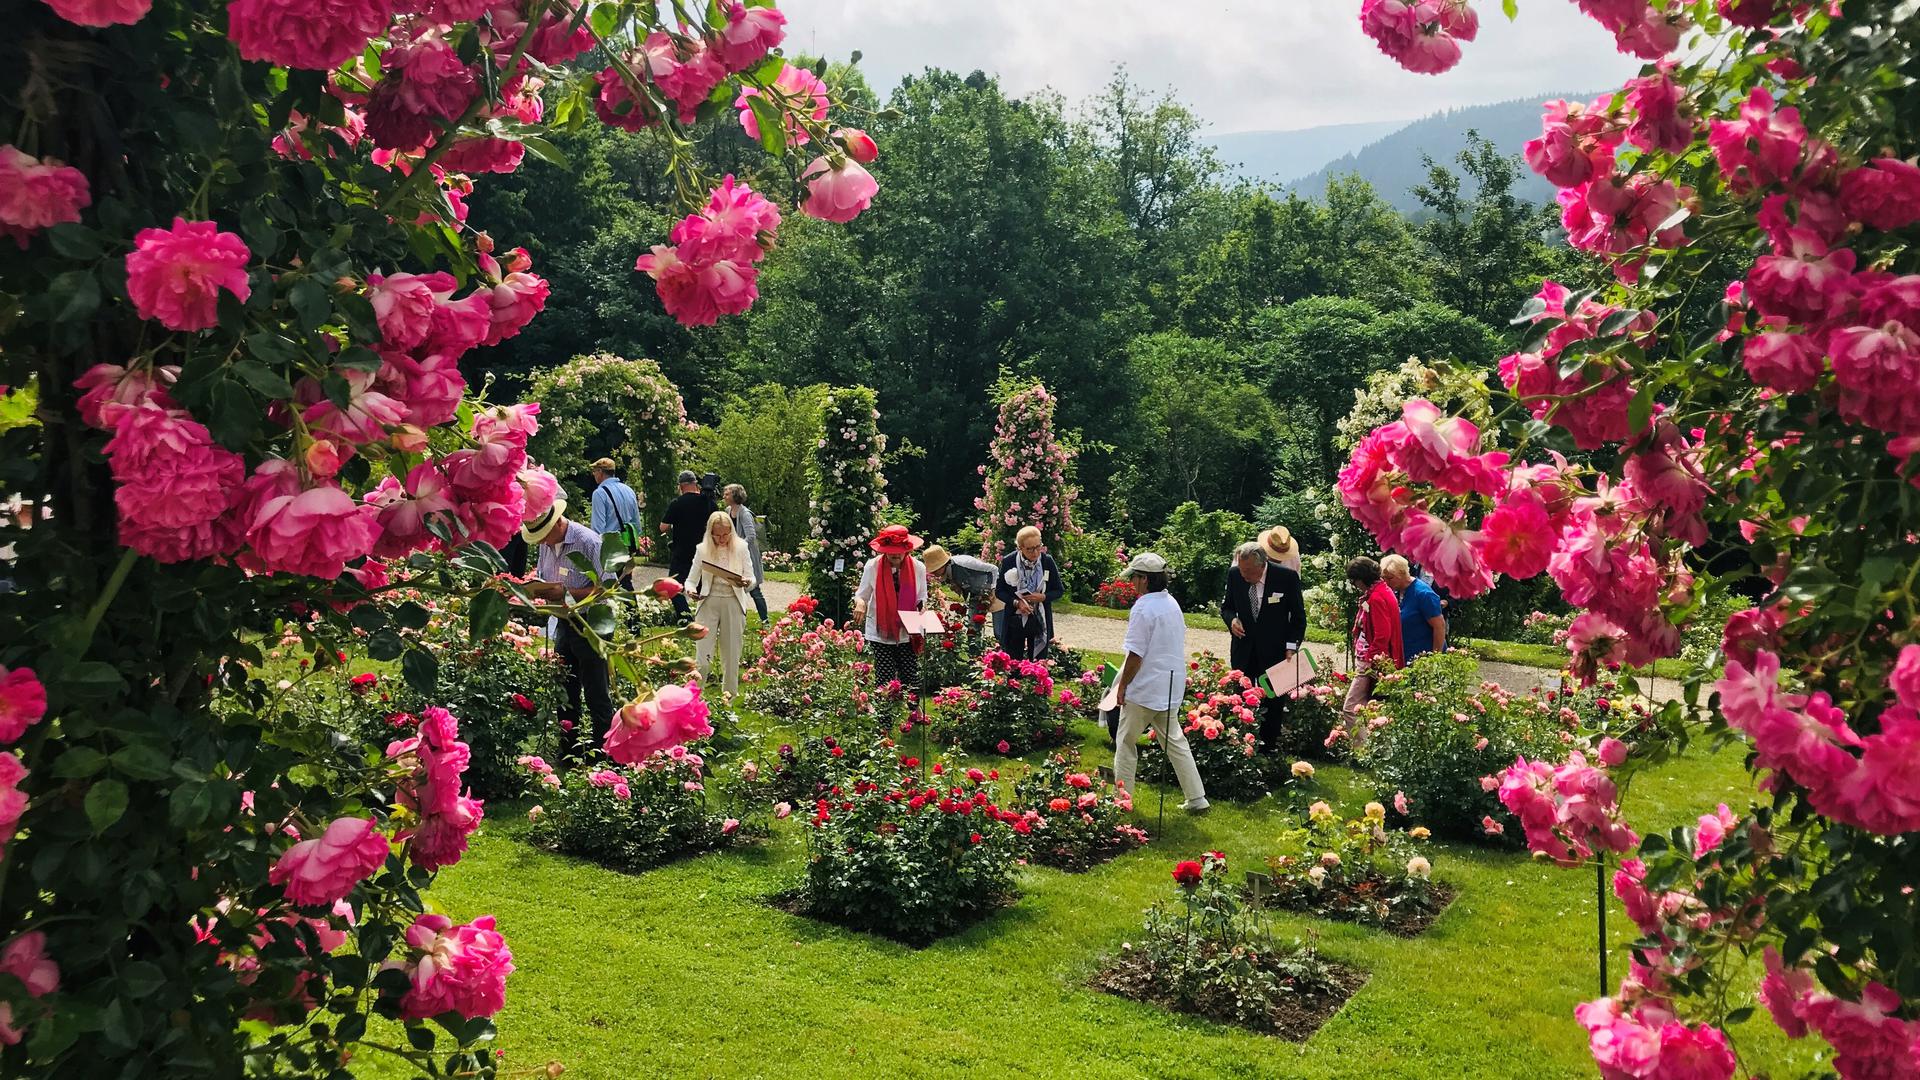 Im Rosenneuheitengarten auf dem Beutig in Baden-Baden hat die Rosenblüte derzeit ihren Höhepunkt erreicht. 